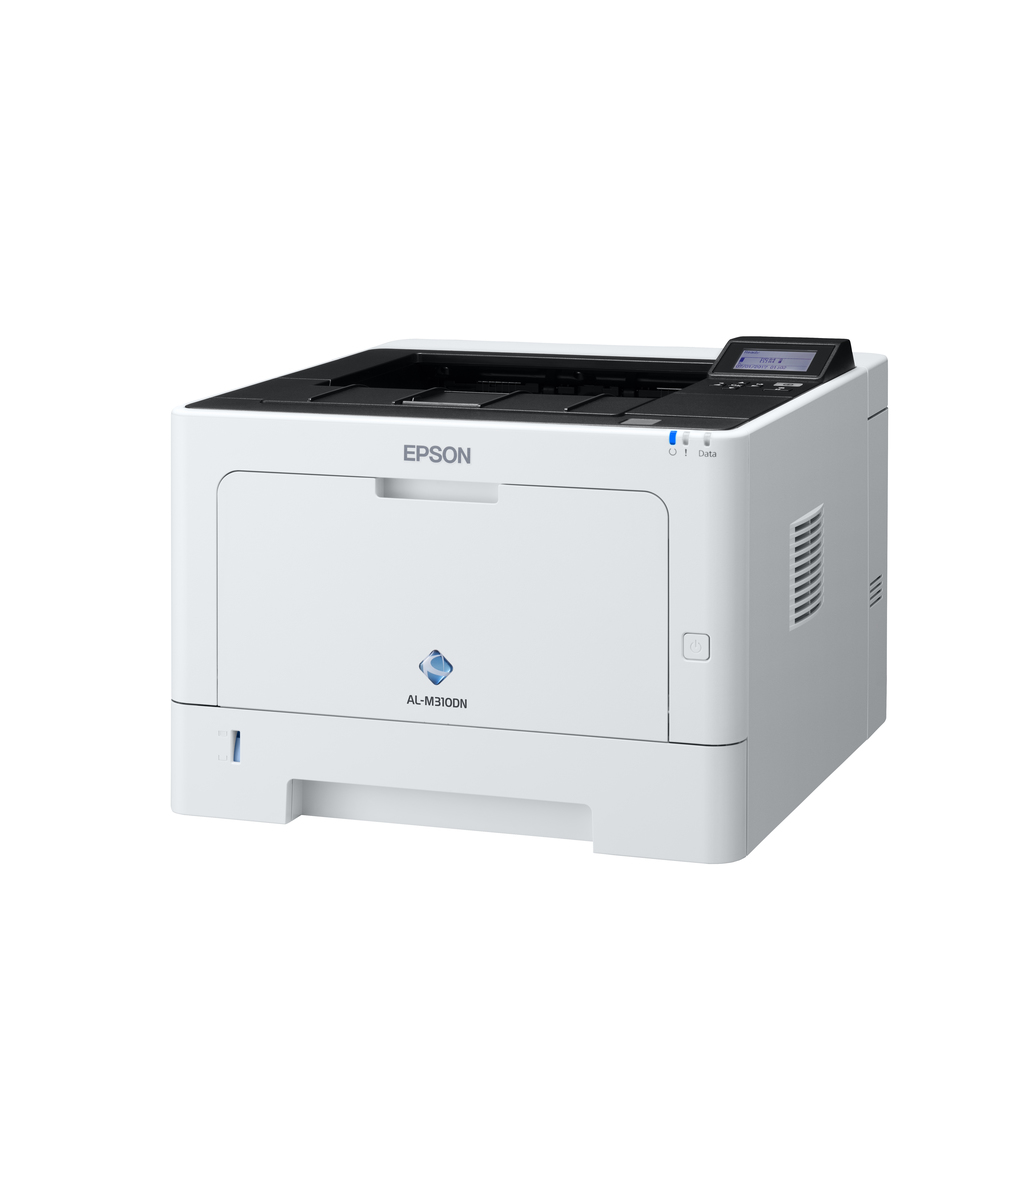 C11cf22401 Epson Workforce Al M310dn Mono Laser Printer เลเซอร์ Epson Thailand 7888